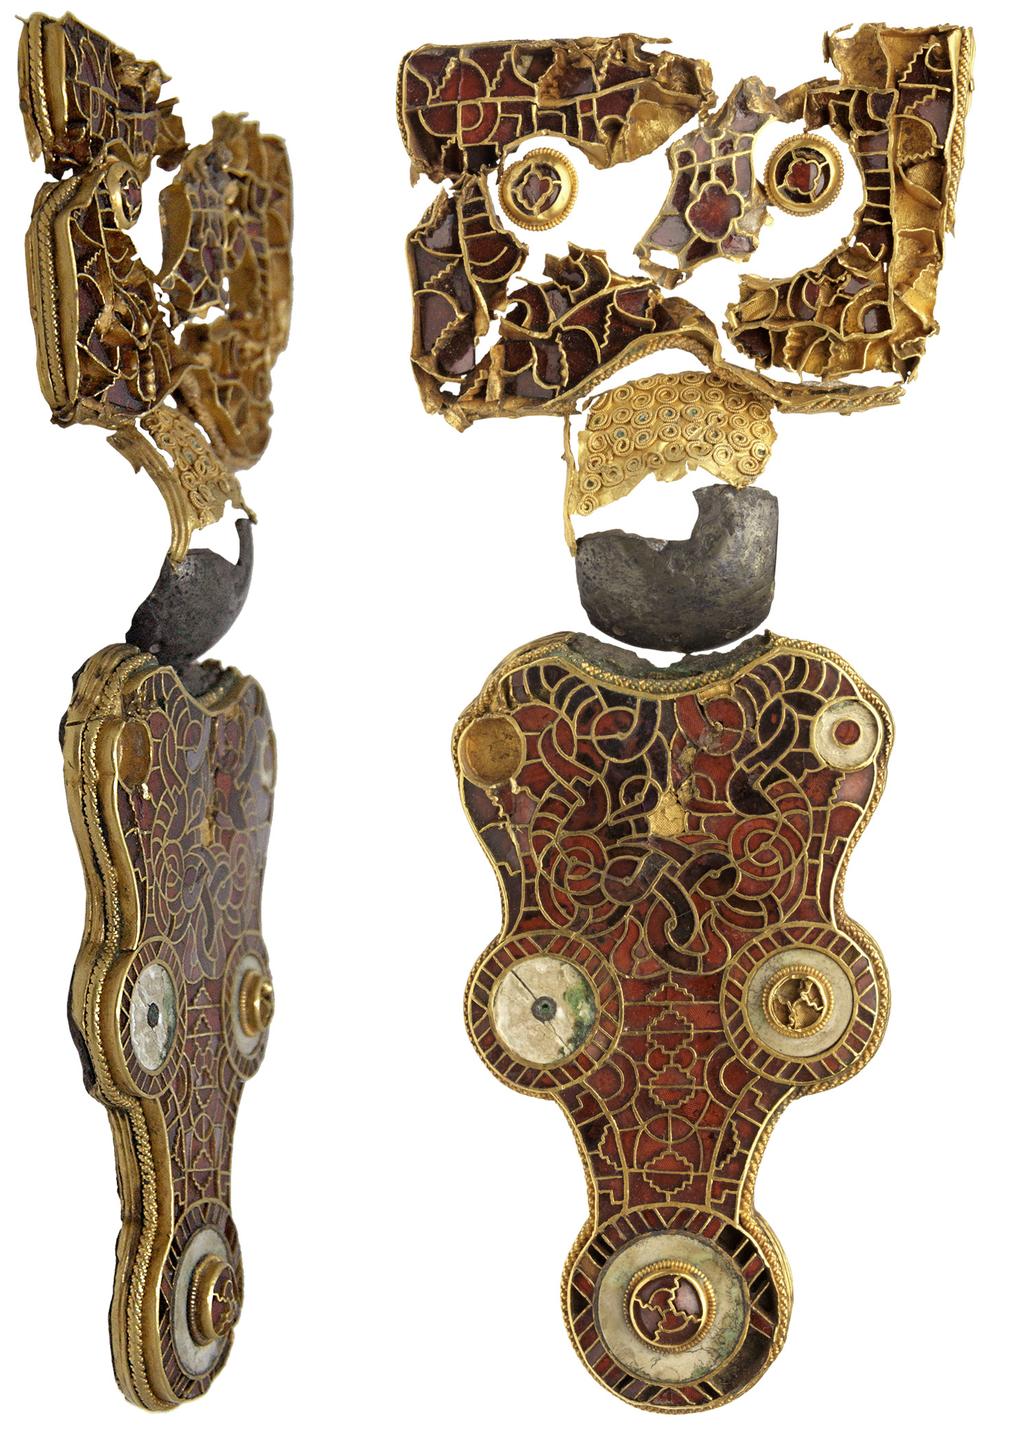 Wijnaldum: koningsterp aan de Ried 5 Fig. 4 De grote fibula van Wijnaldum, nadat alle fragmenten die sinds de jaren 50 van de vorige eeuw zijn gevonden zijn samengevoegd. De mantelspeld is rond 600 n.